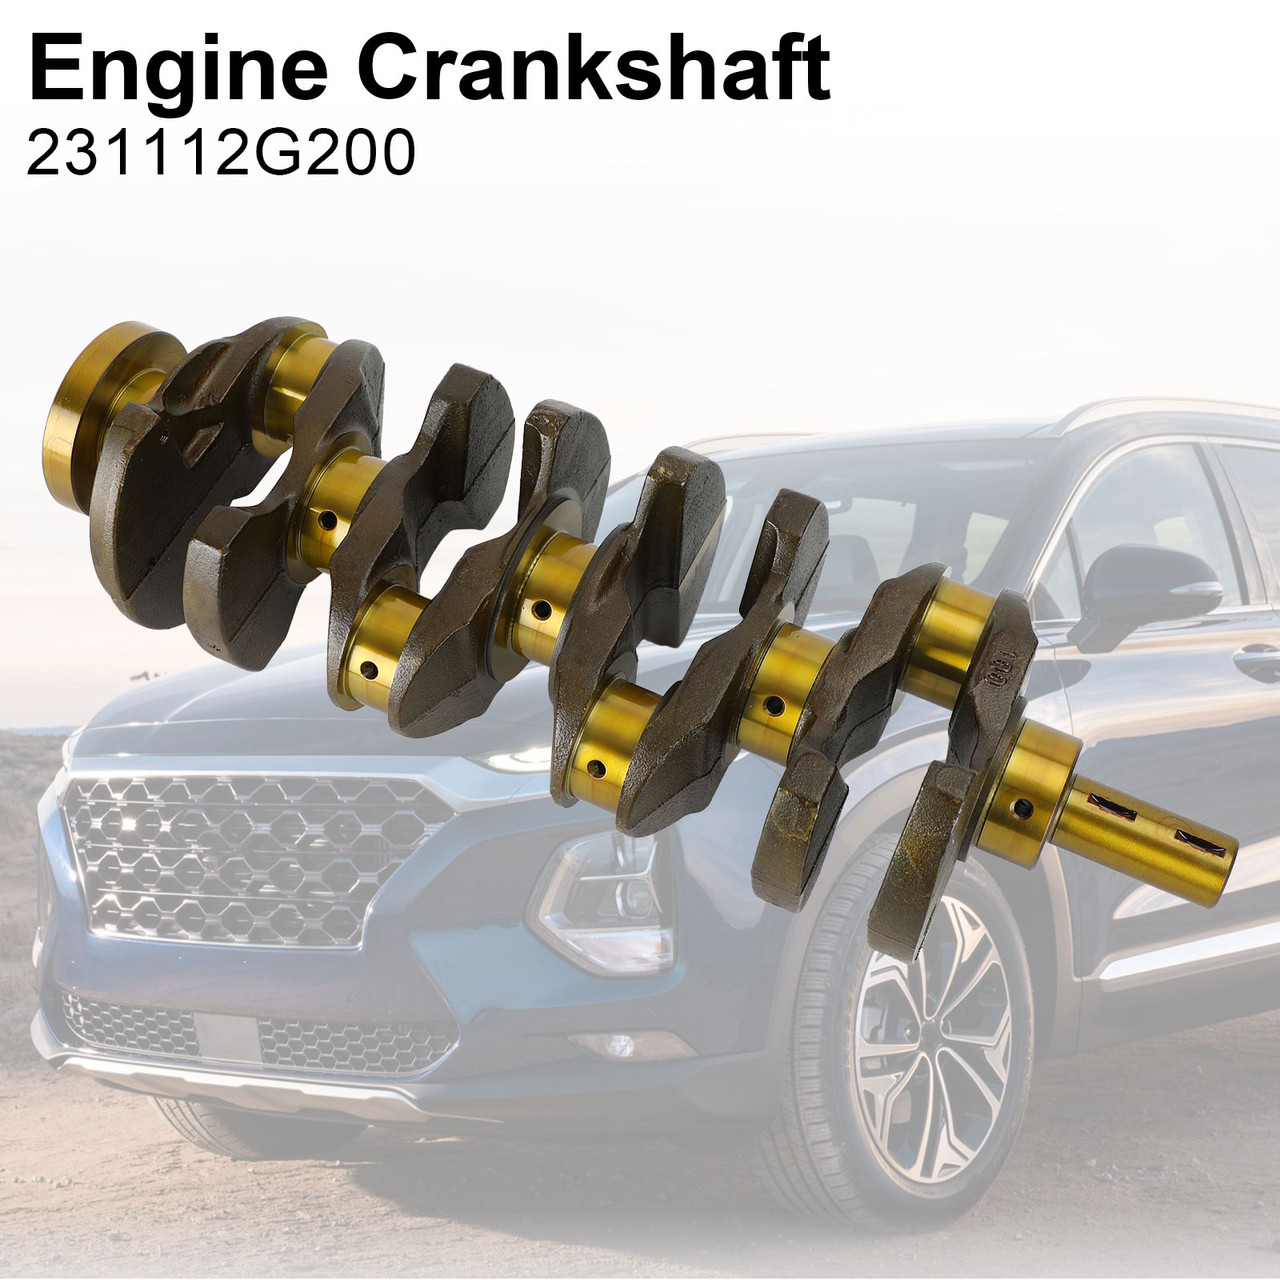 Engine Crankshaft Fit for Hyundai Santa Fe 2.4L 10-12/19-20 Sonata 06-19 Tucson 10-15